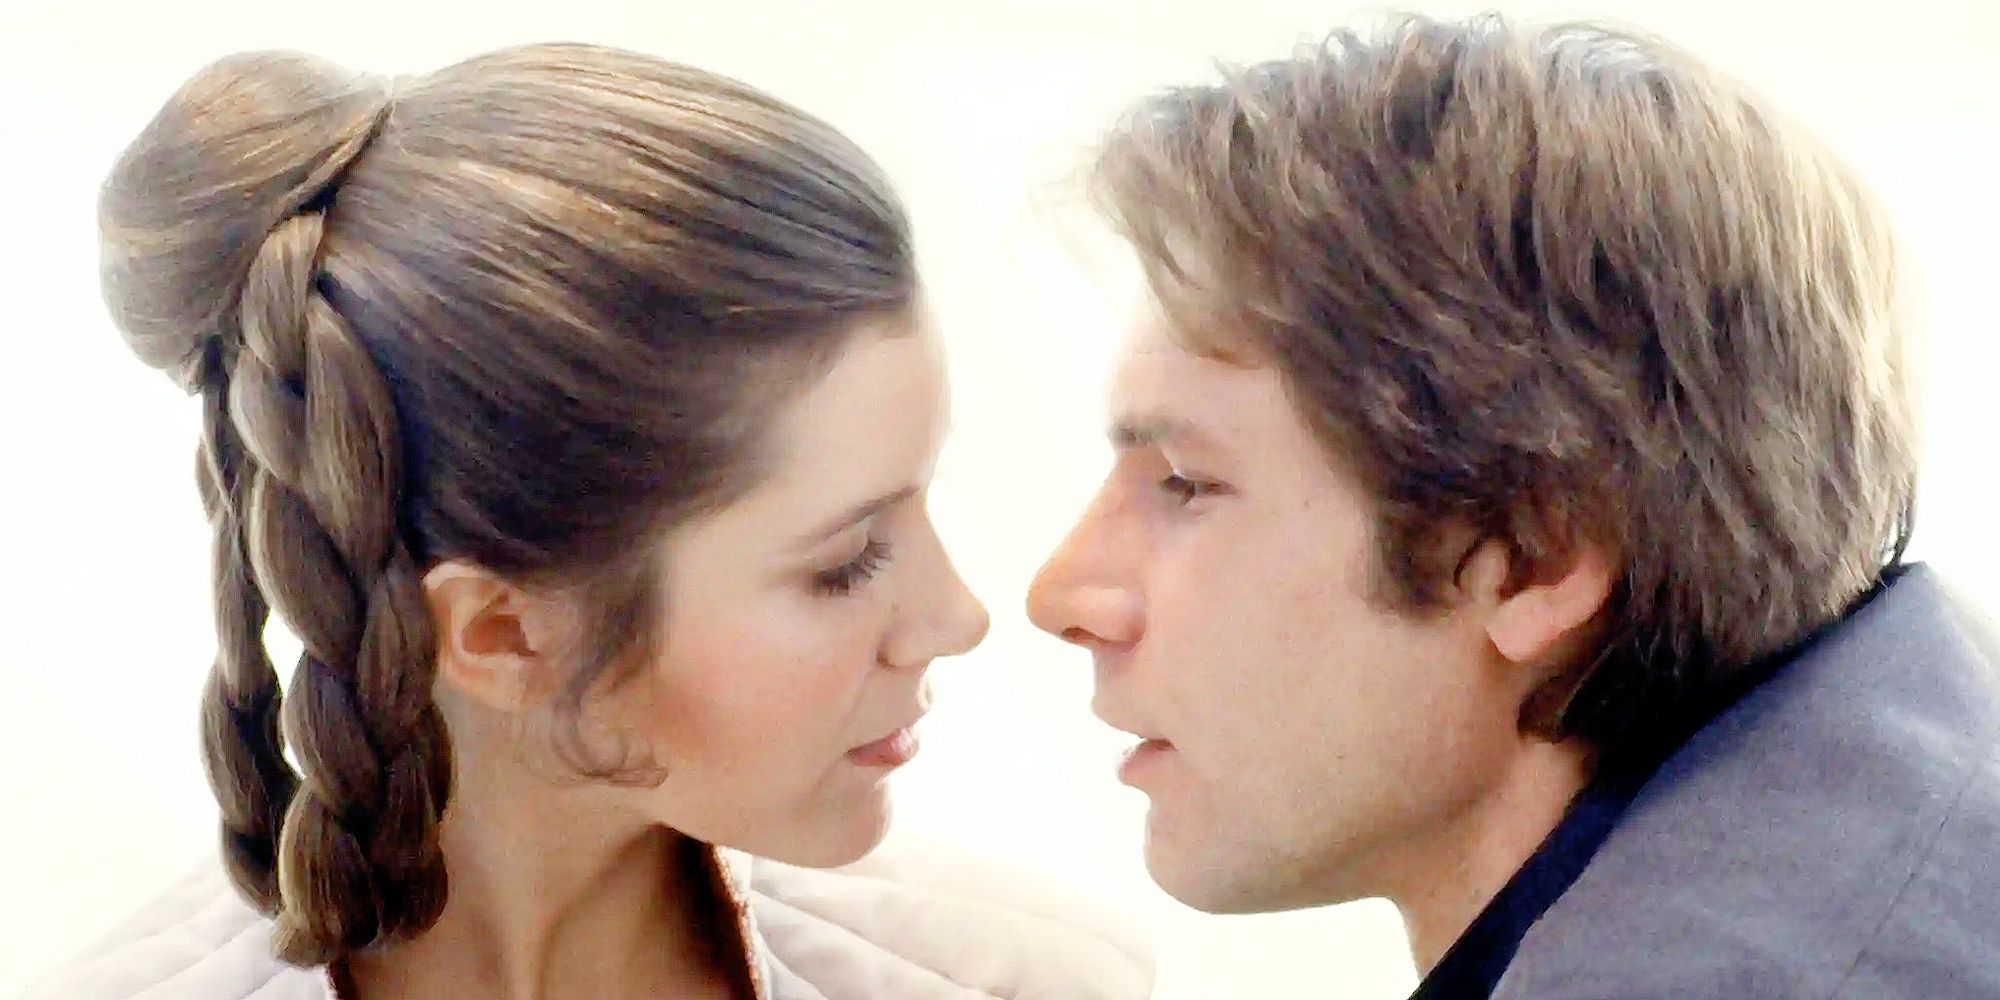 Han y Leia casi se besan en Star Wars: El Imperio Contraataca